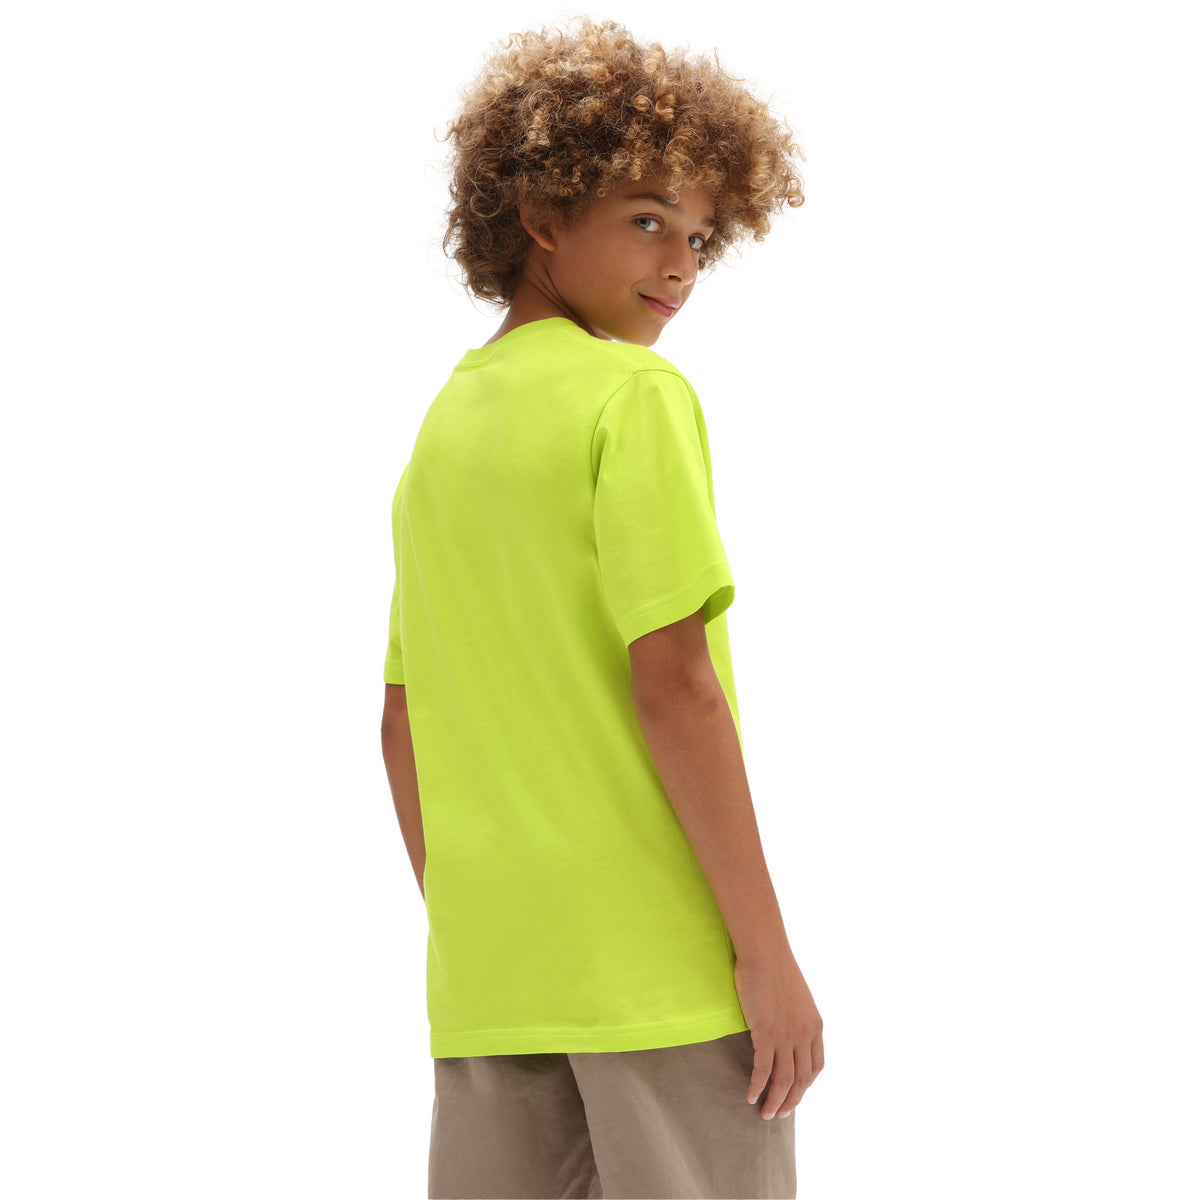 ואנס חולצה קצרה בצבע צהוב לילדים-Vans-S (10)-נאקו